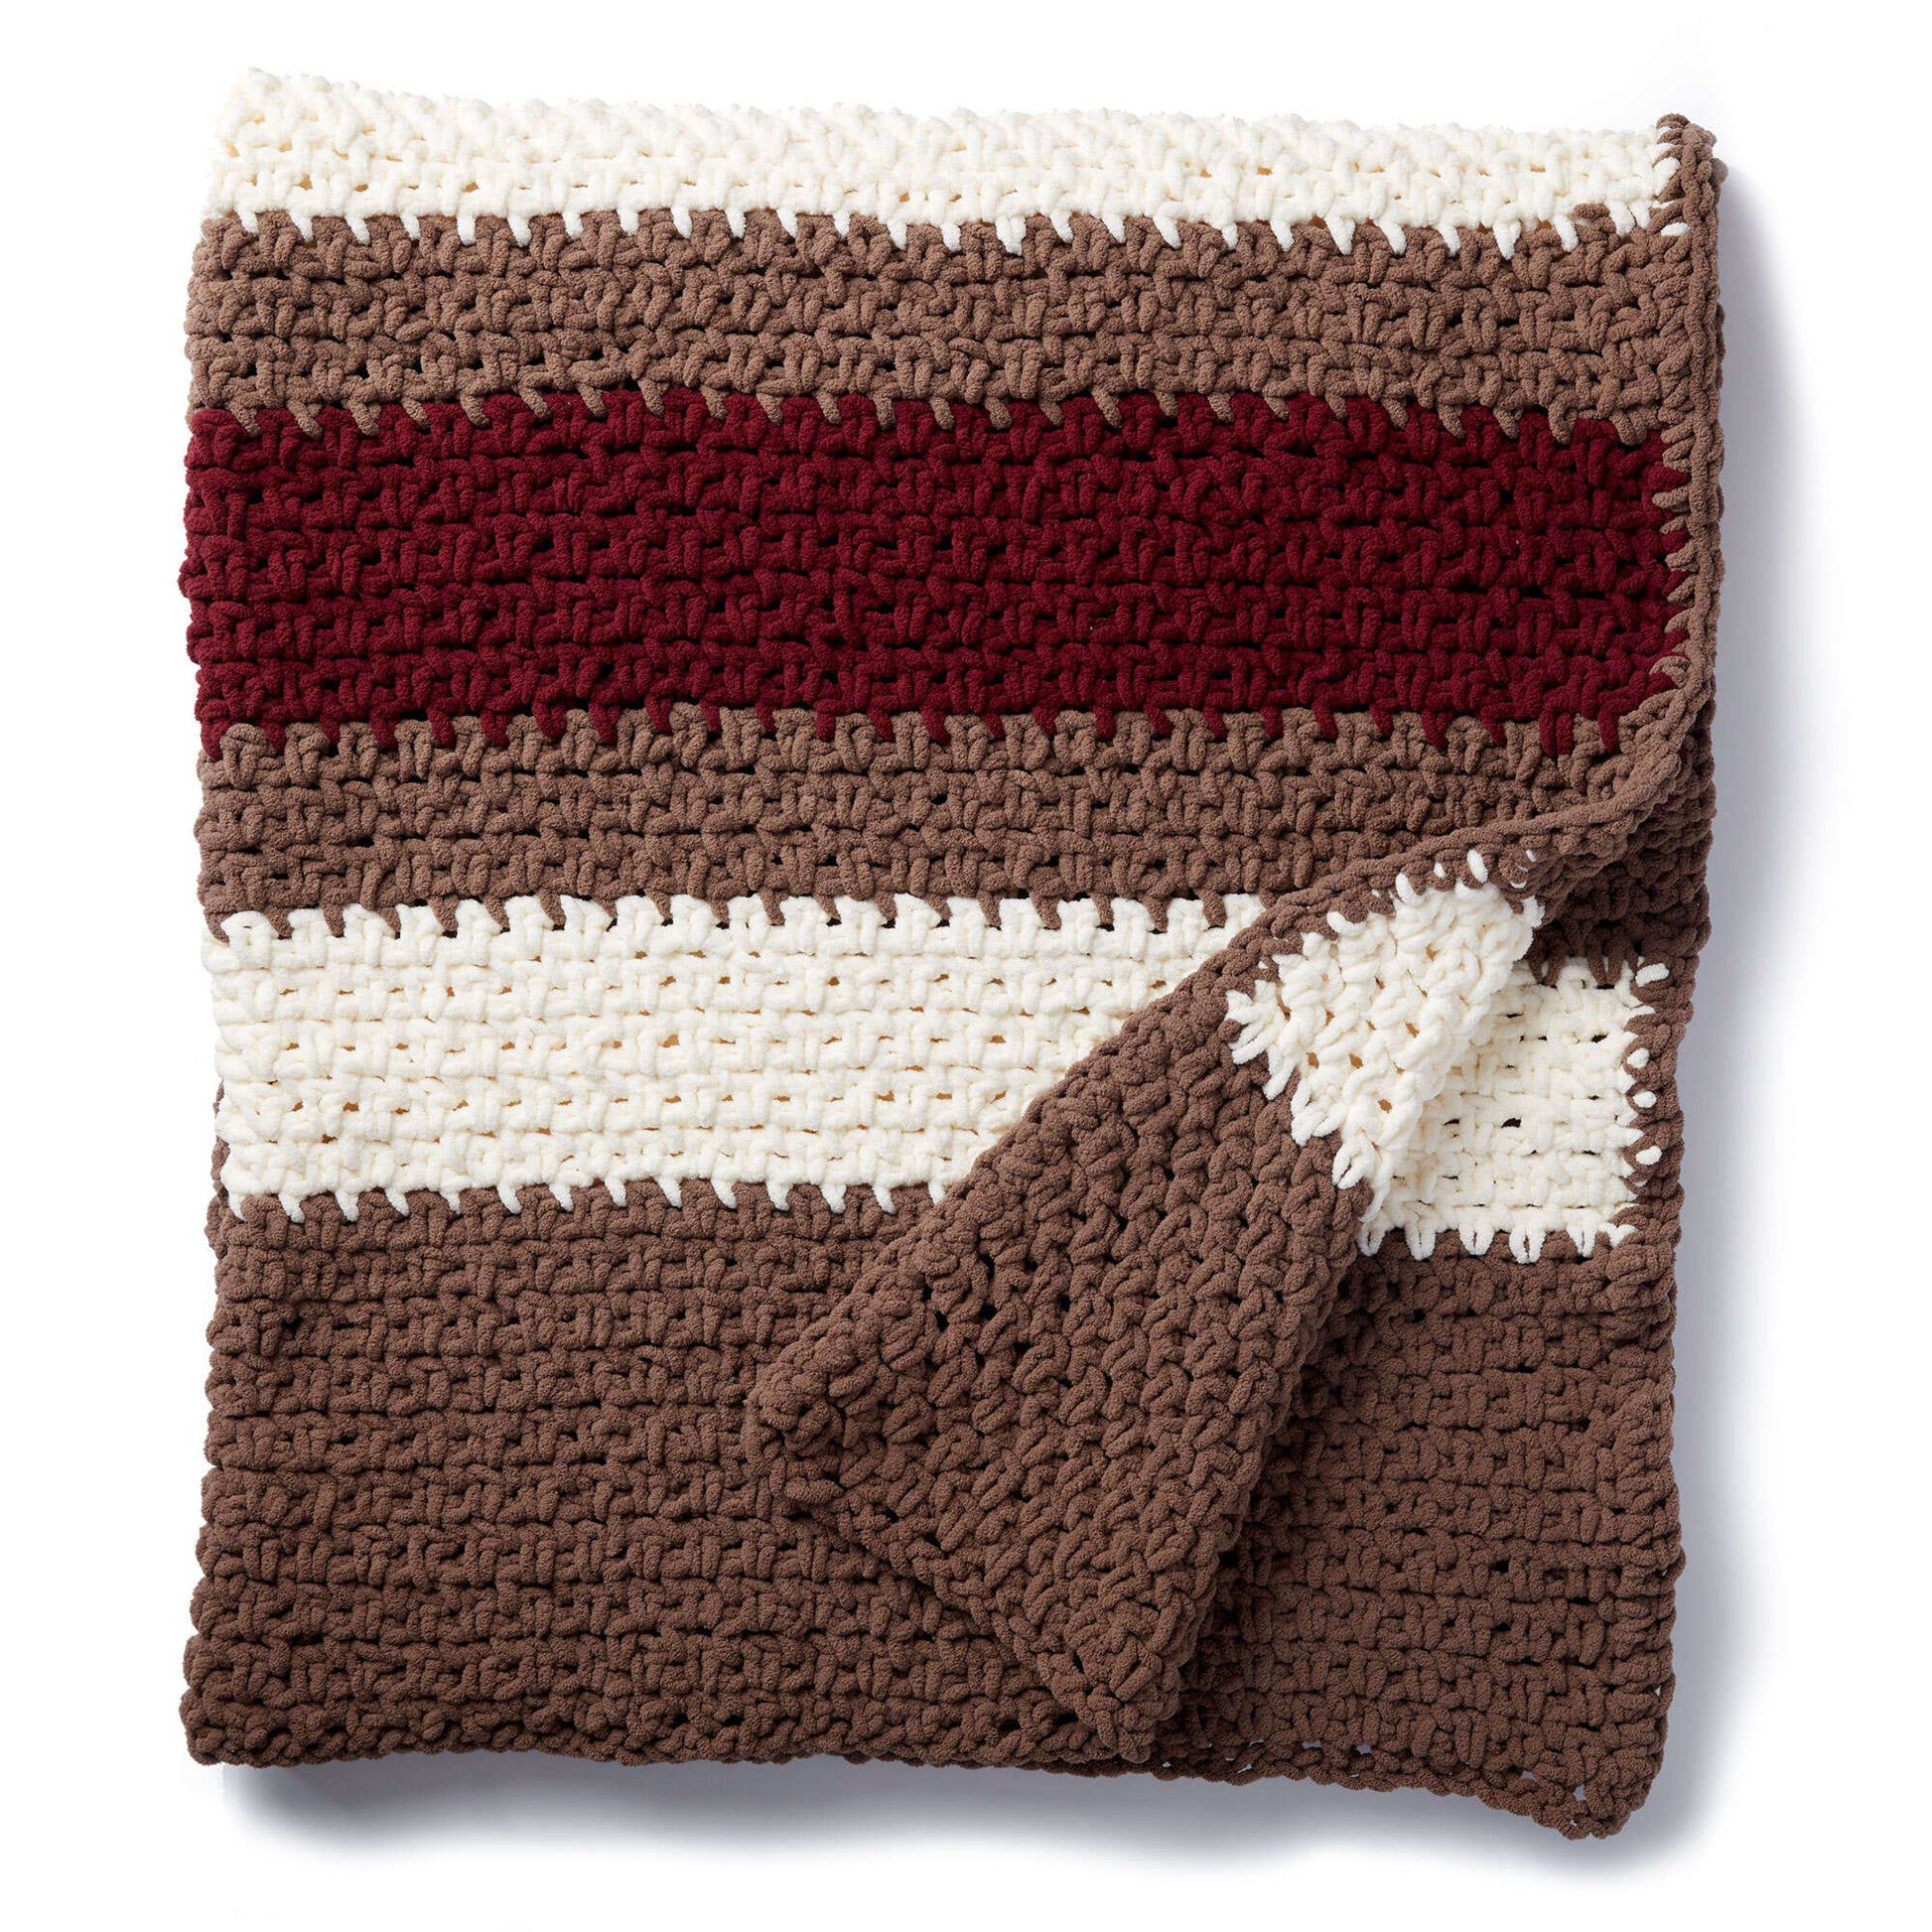 Bernat Hibernate Crochet Blanket Crochet Blanket made in Bernat Blanket yarn